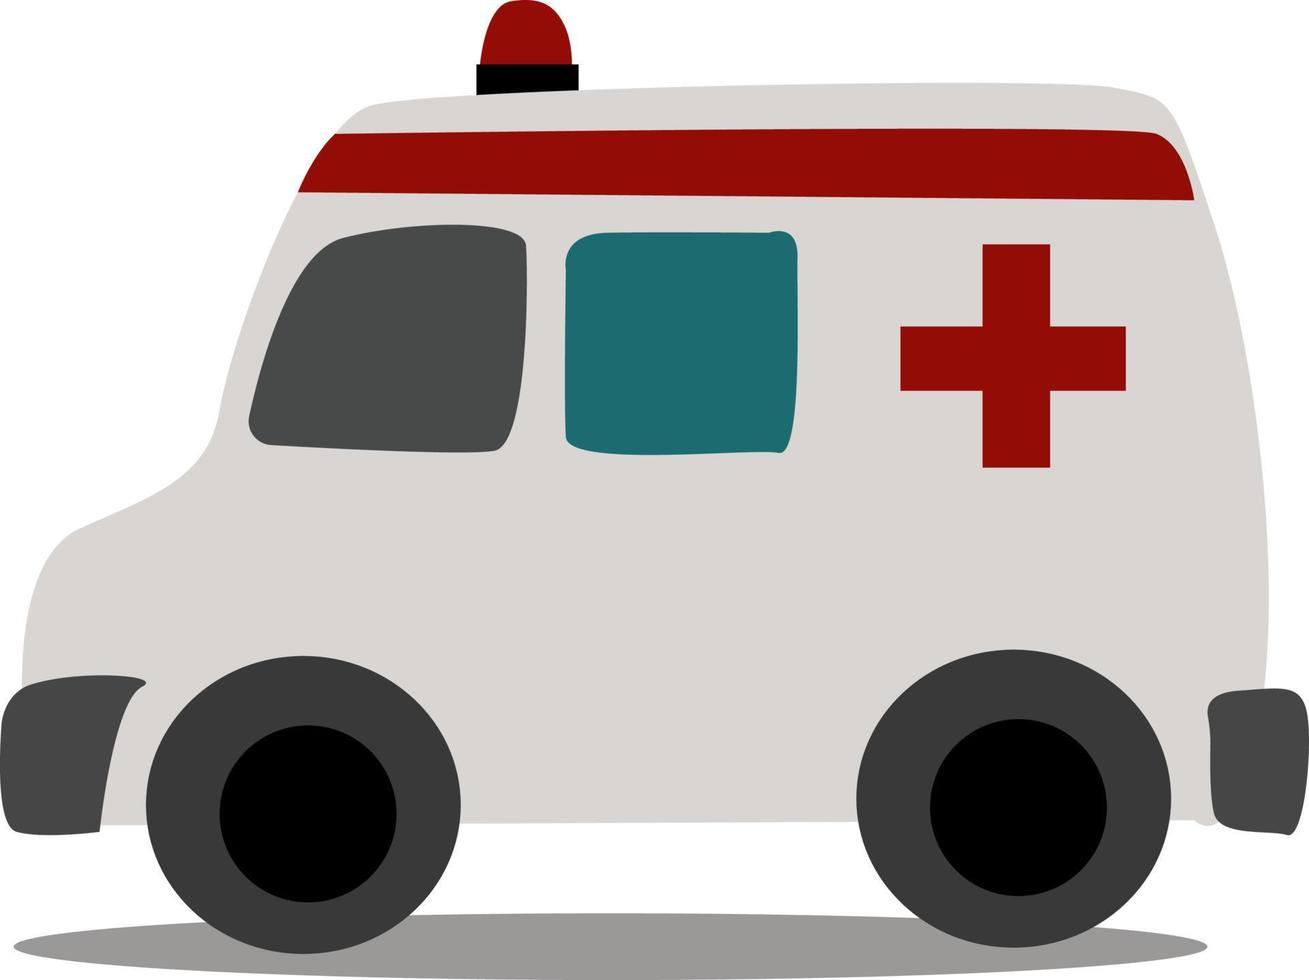 Ambulance, illustration, vector on white background.